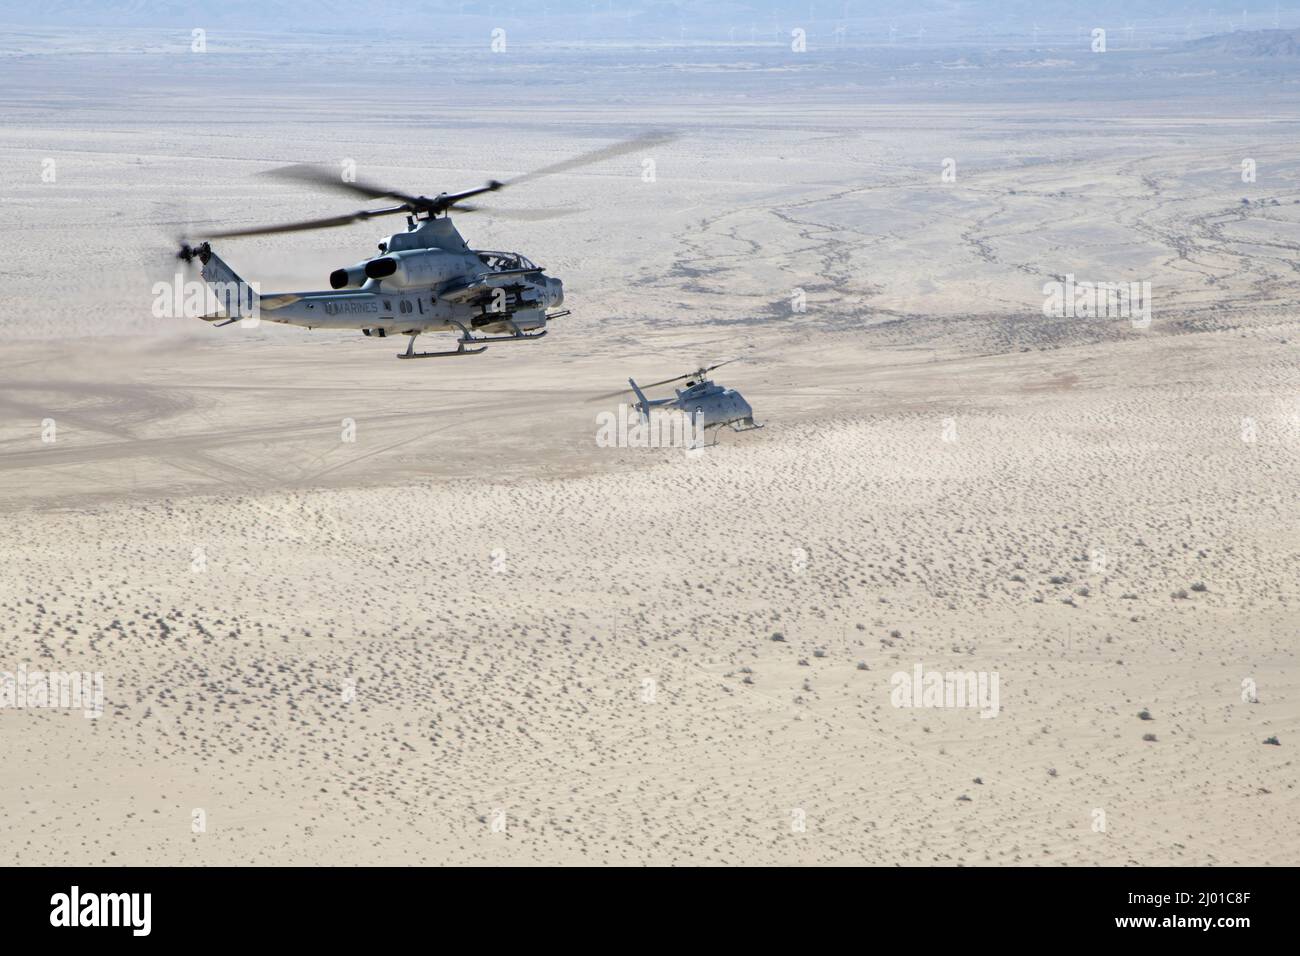 Un víbora AH-1Z (izquierda) con escuadrón de evaluación operacional y de pruebas marinas 1 (VMX-1), y un helicóptero MQ-8C Fire Scout no tripulado asignado al escuadrón de combate marítimo en helicóptero 23 (HSC-23), conducen la coordinación de huelgas y el entrenamiento de reconocimiento cerca de El Centro, California, el 10 de marzo de 2022. El propósito de este ejercicio fue proporcionar familiarización y desarrollo conceptual de la formación de equipos tripulados y no tripulados. (EE.UU Marine Corps foto por Lance Cpl. Jade Venegas) Foto de stock